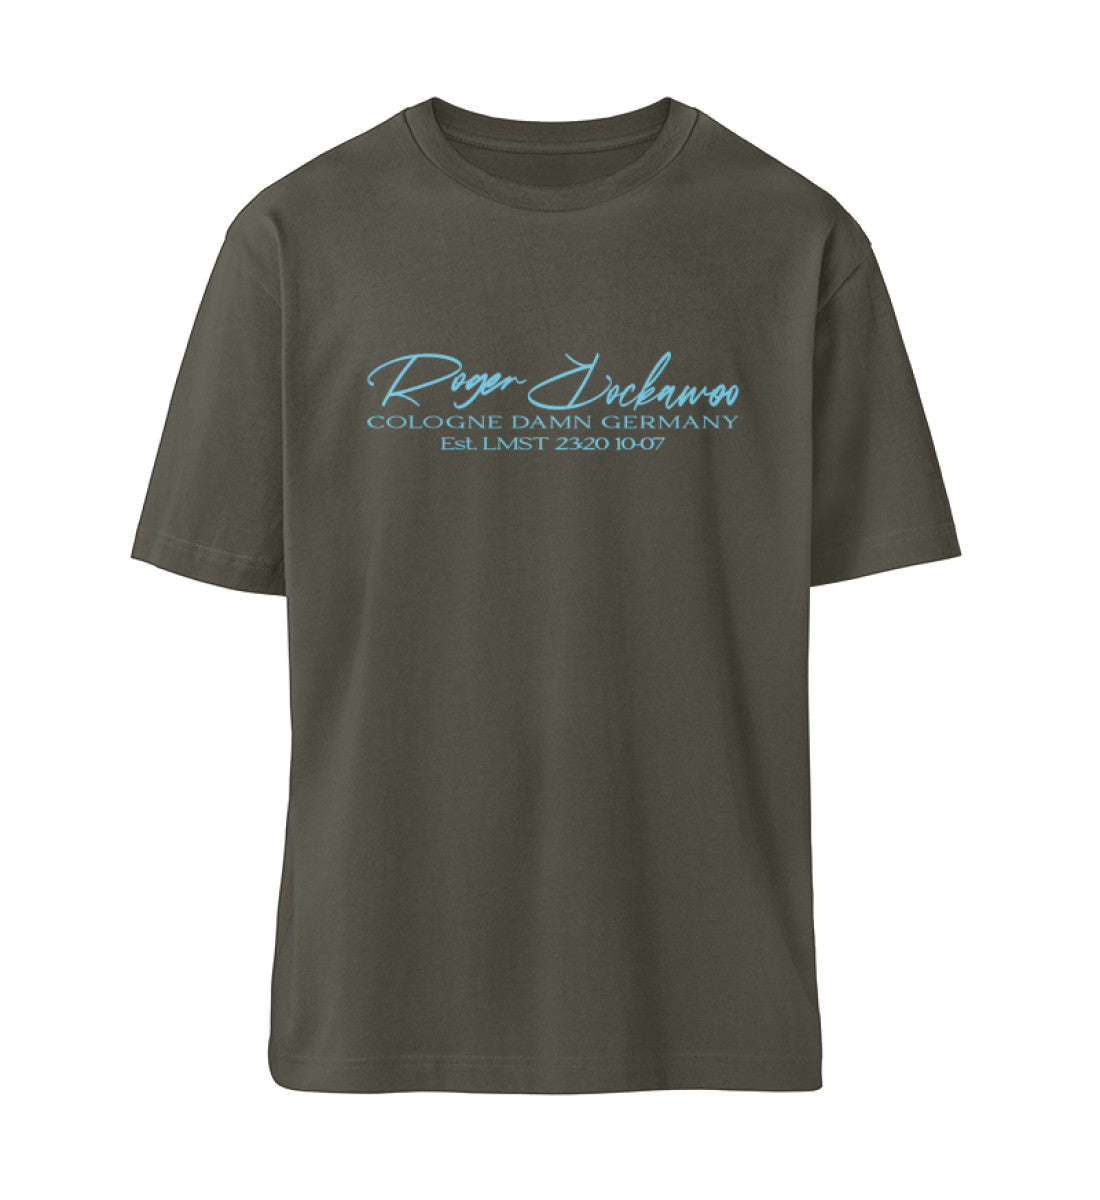 Khaki farbiges T-Shirt Unisex Relaxed Fit für Frauen und Männer bedruckt mit dem Design der Roger Rockawoo Kollektion if the beach could talk